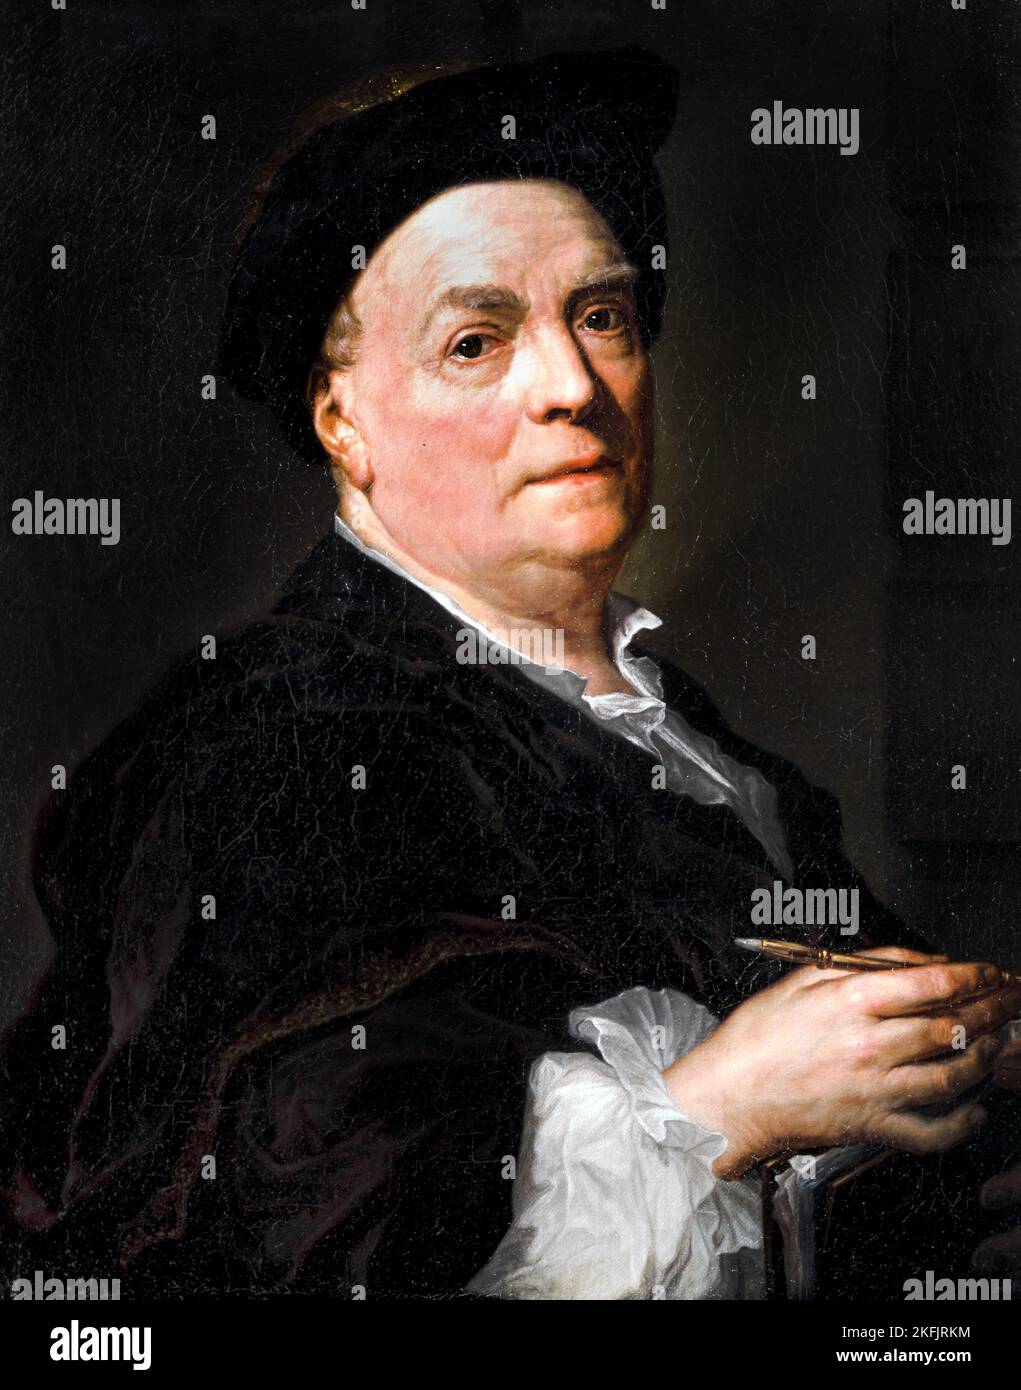 Anton Raphael Mengs; Portrait du peintre français Louis de Silvestre; Circa 1745; huile sur toile; Real Academia de Bellas Artes de San Fernando, Madr Banque D'Images